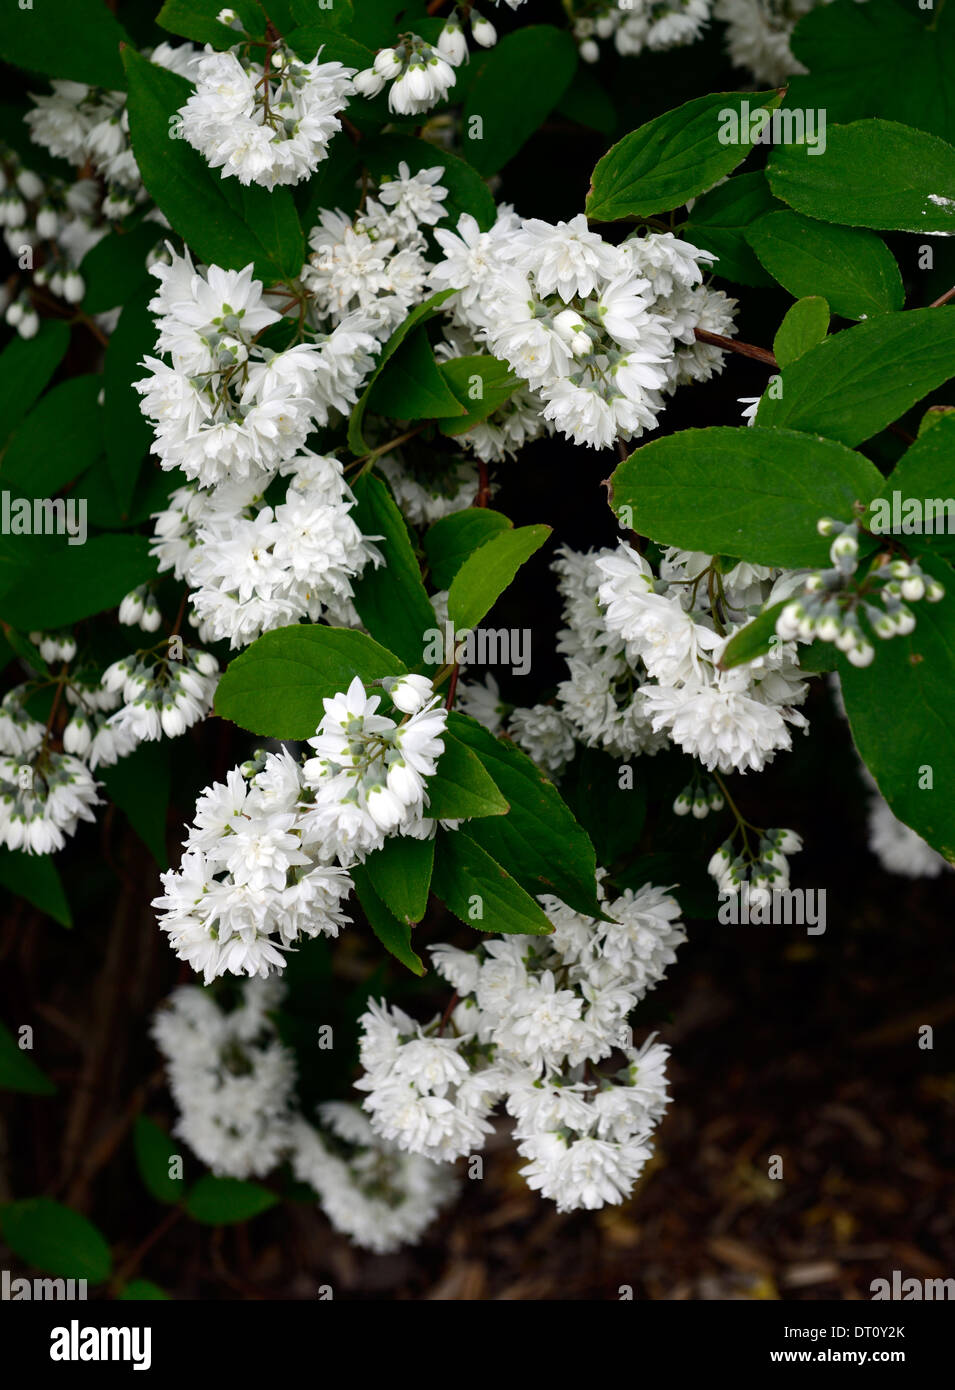 deutzia x magnifica white flowers flower flowering spring Deciduous shrub shrubs green leaves foliage deutzias Stock Photo